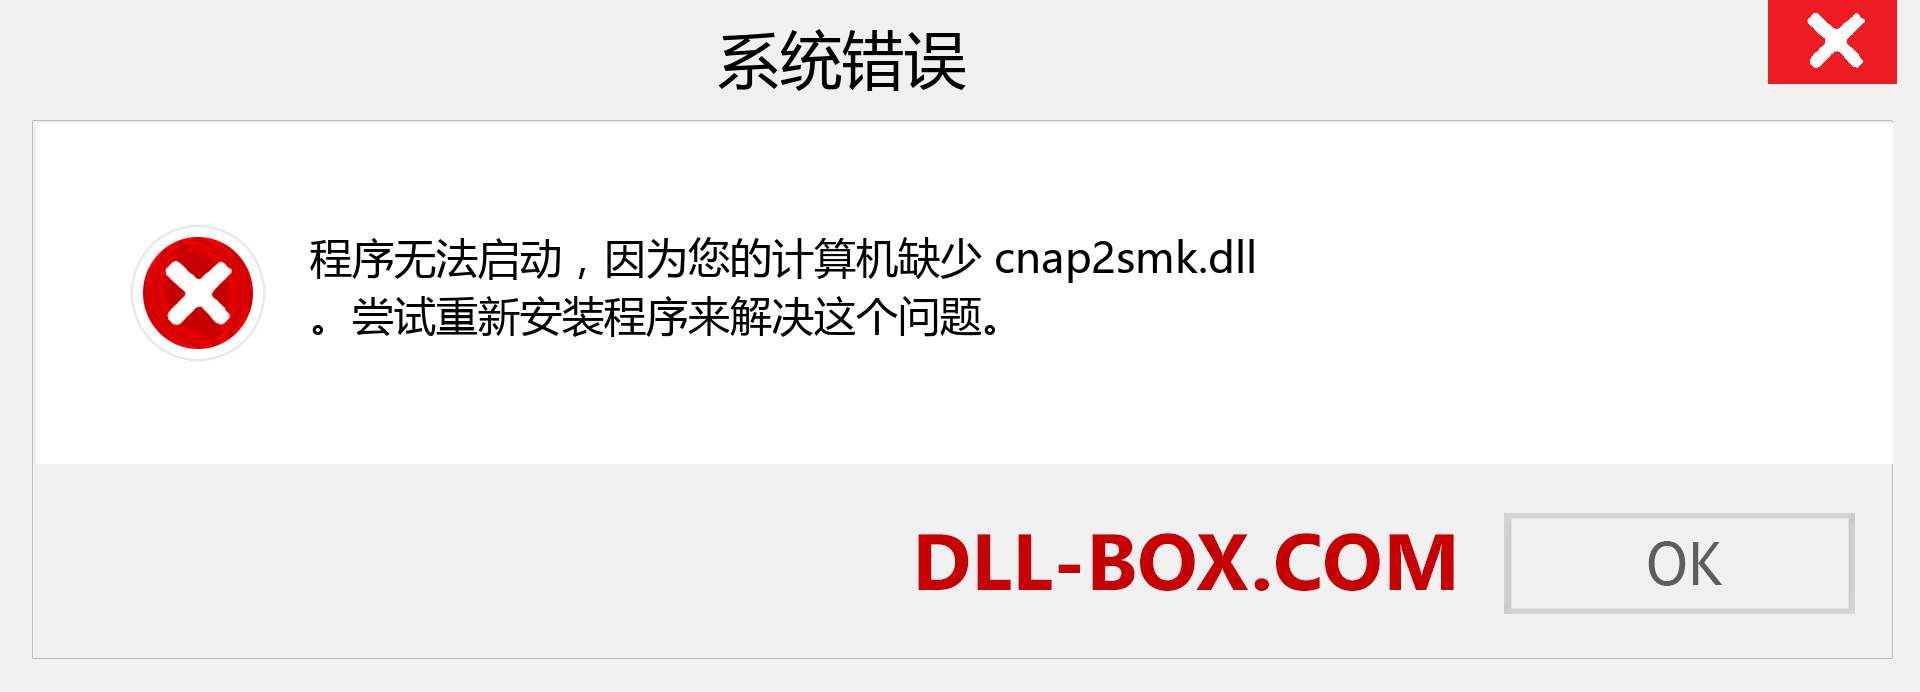 cnap2smk.dll 文件丢失？。 适用于 Windows 7、8、10 的下载 - 修复 Windows、照片、图像上的 cnap2smk dll 丢失错误